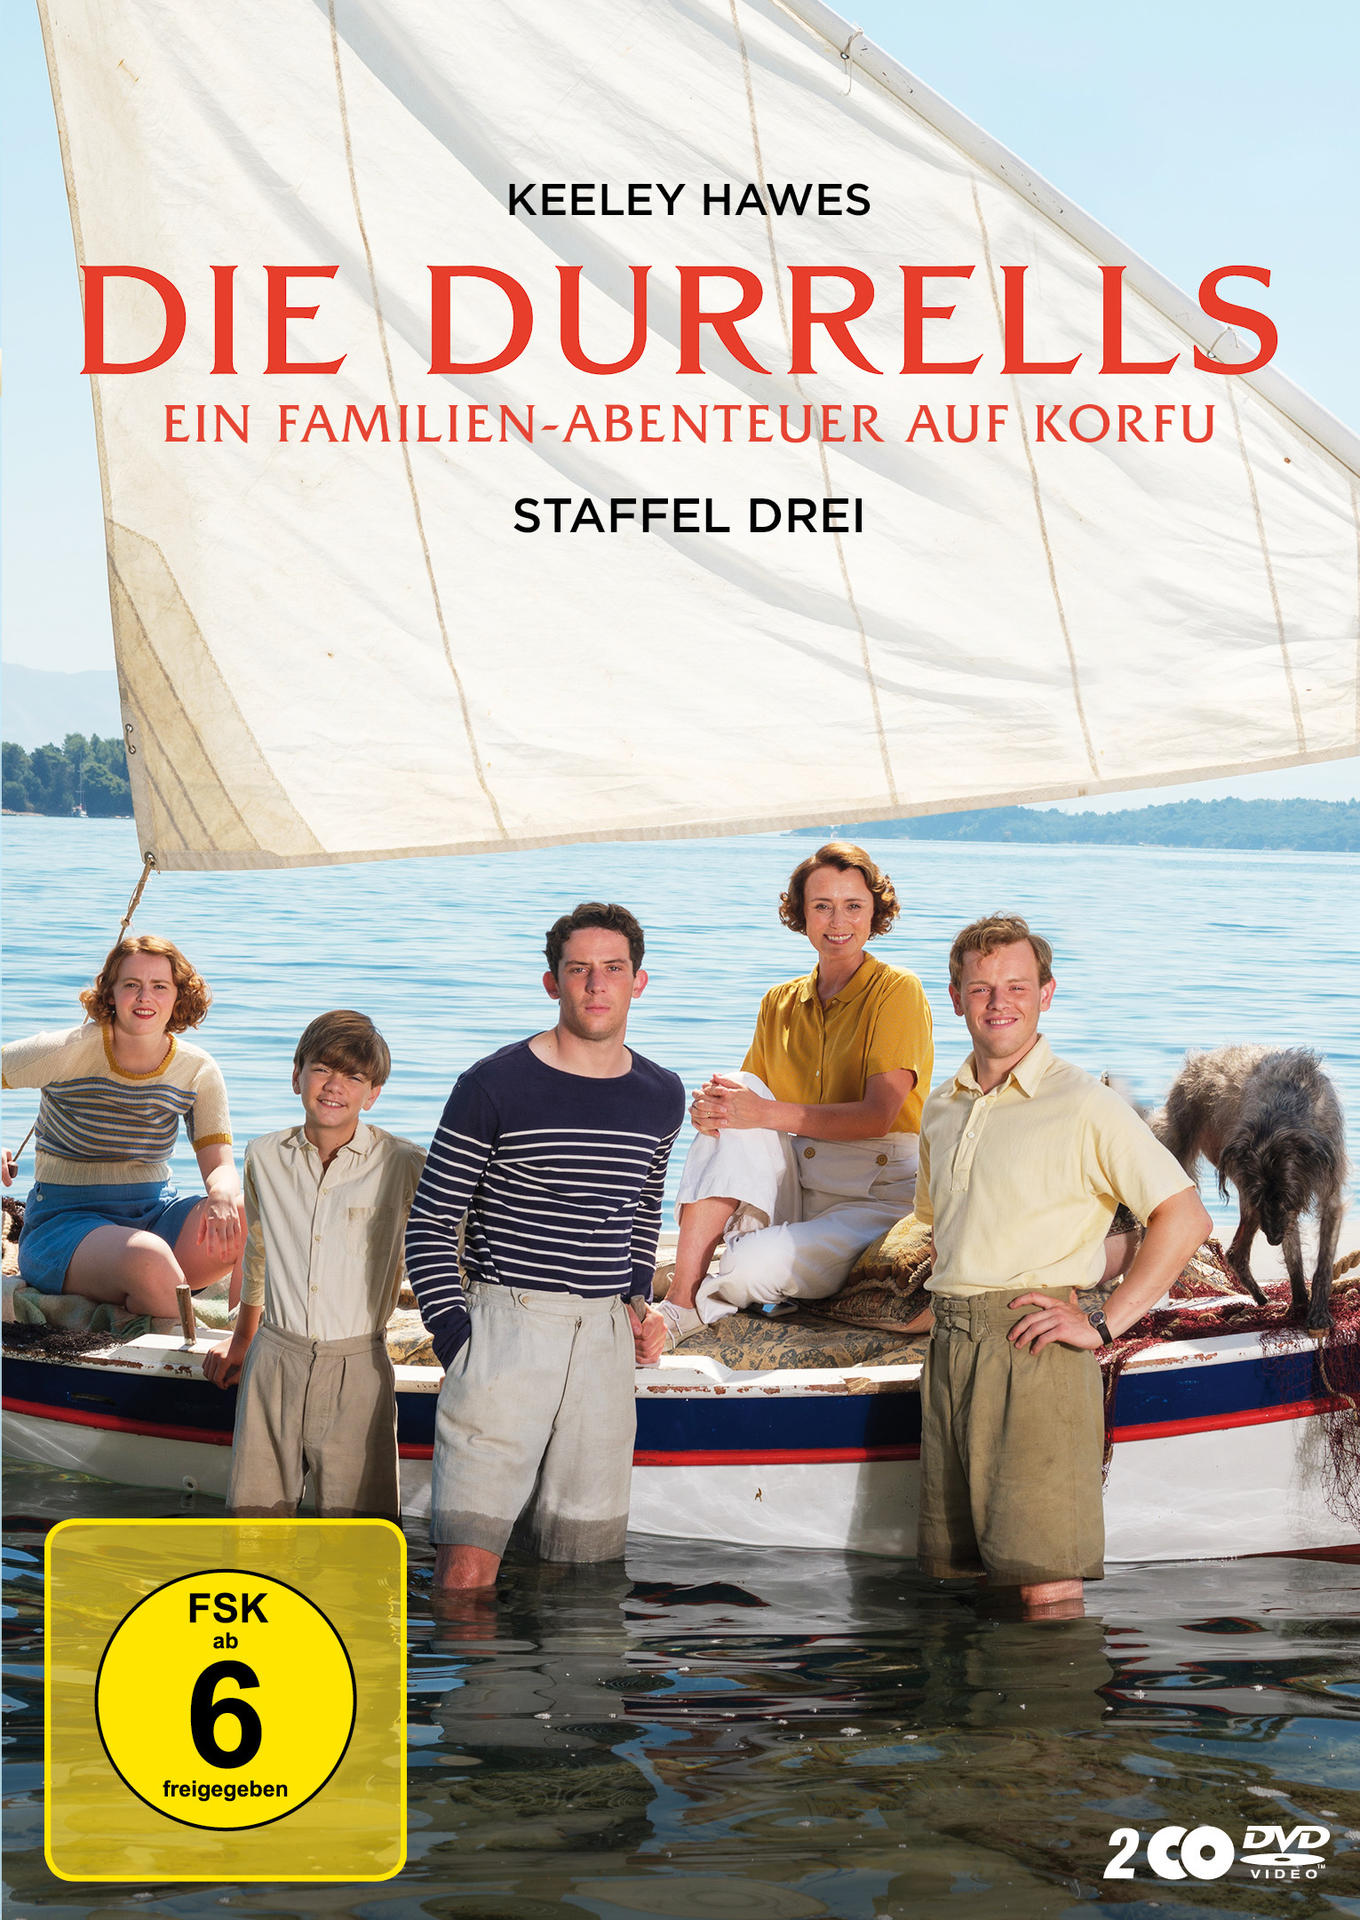 Staffel Durrells 3 DVD Die -